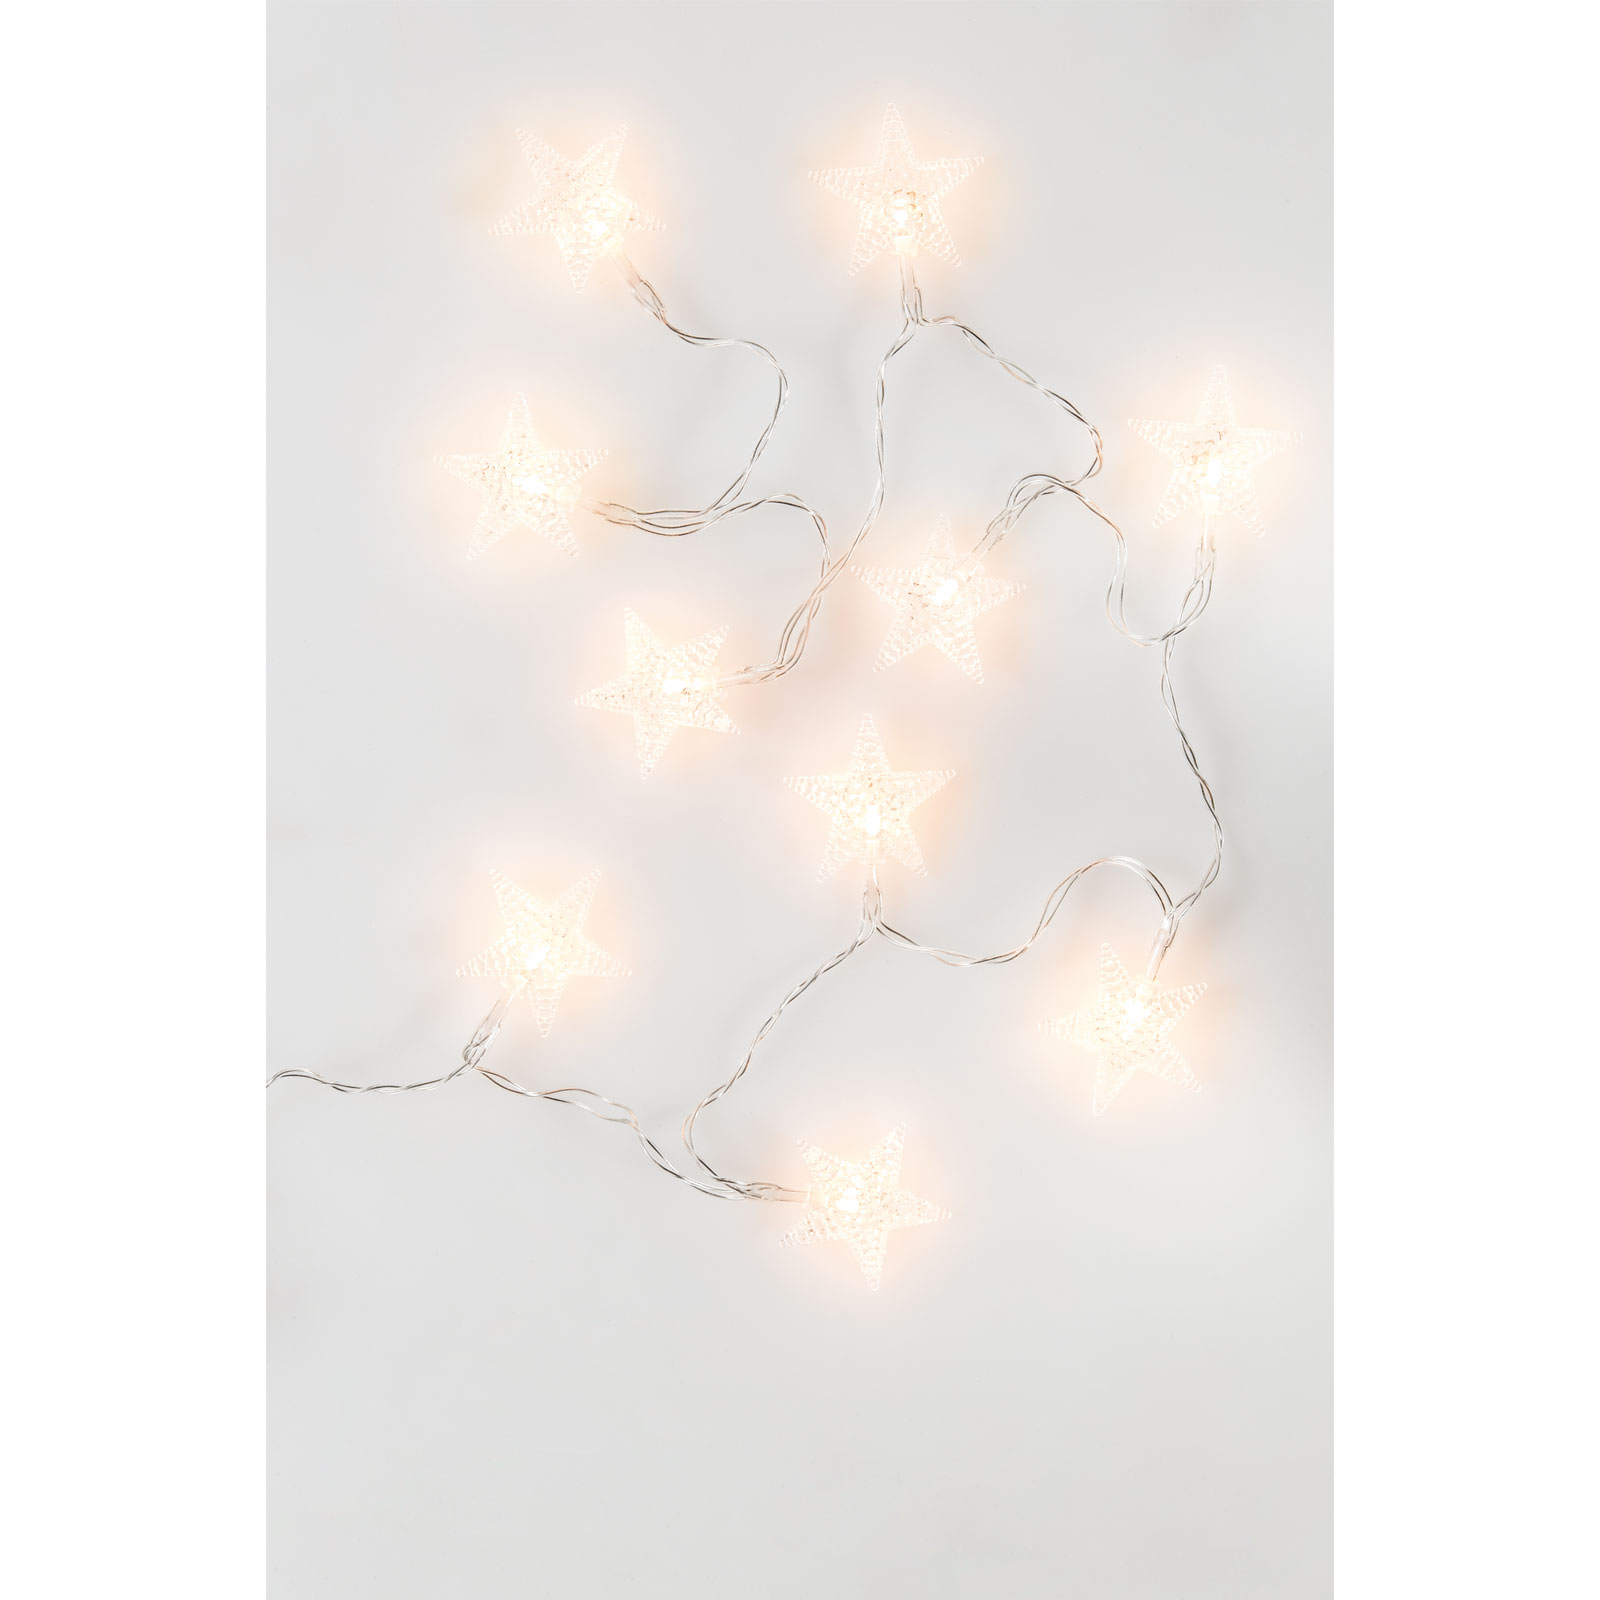 LED Deko– leuchtende Zweige, Außen/Innen, warmweiss, Timer